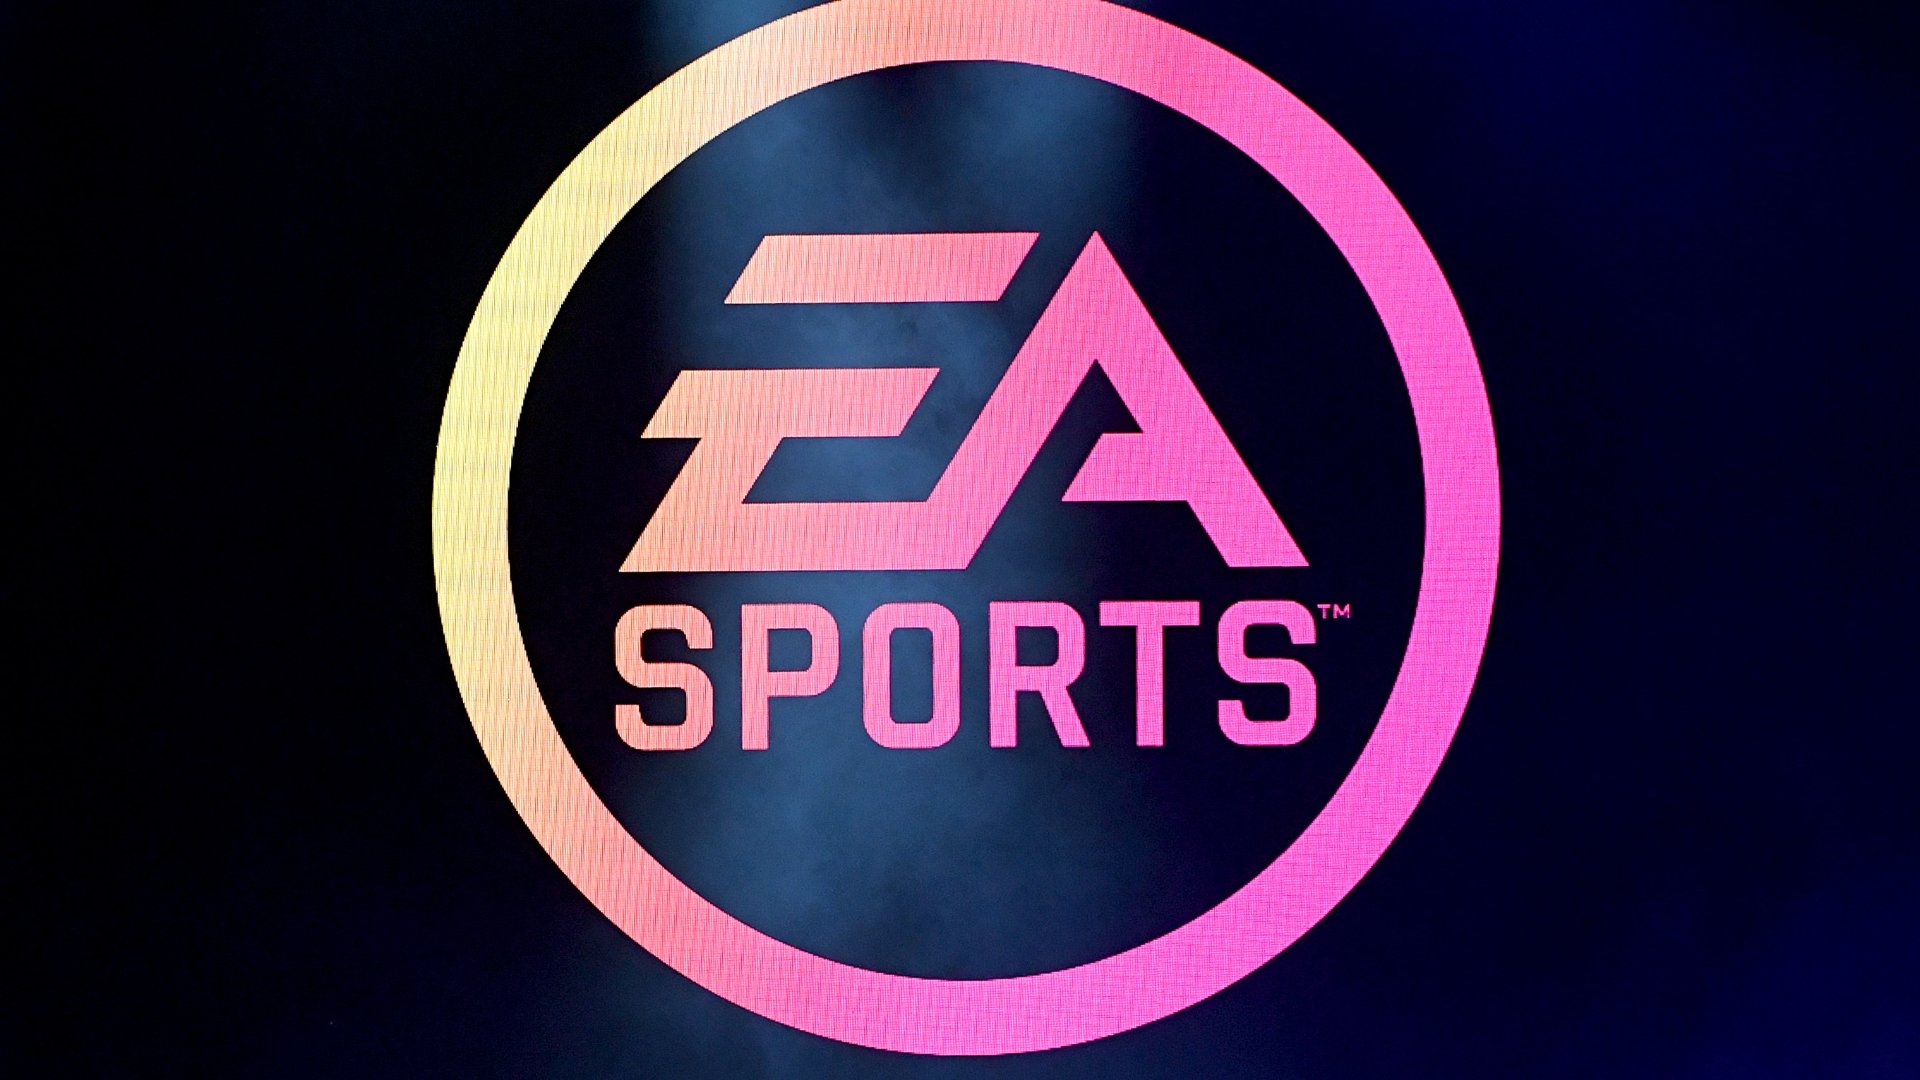 Daugiau informacijos apie "„EA Sports“ nusipirko futbolo lygos pavadinimą"